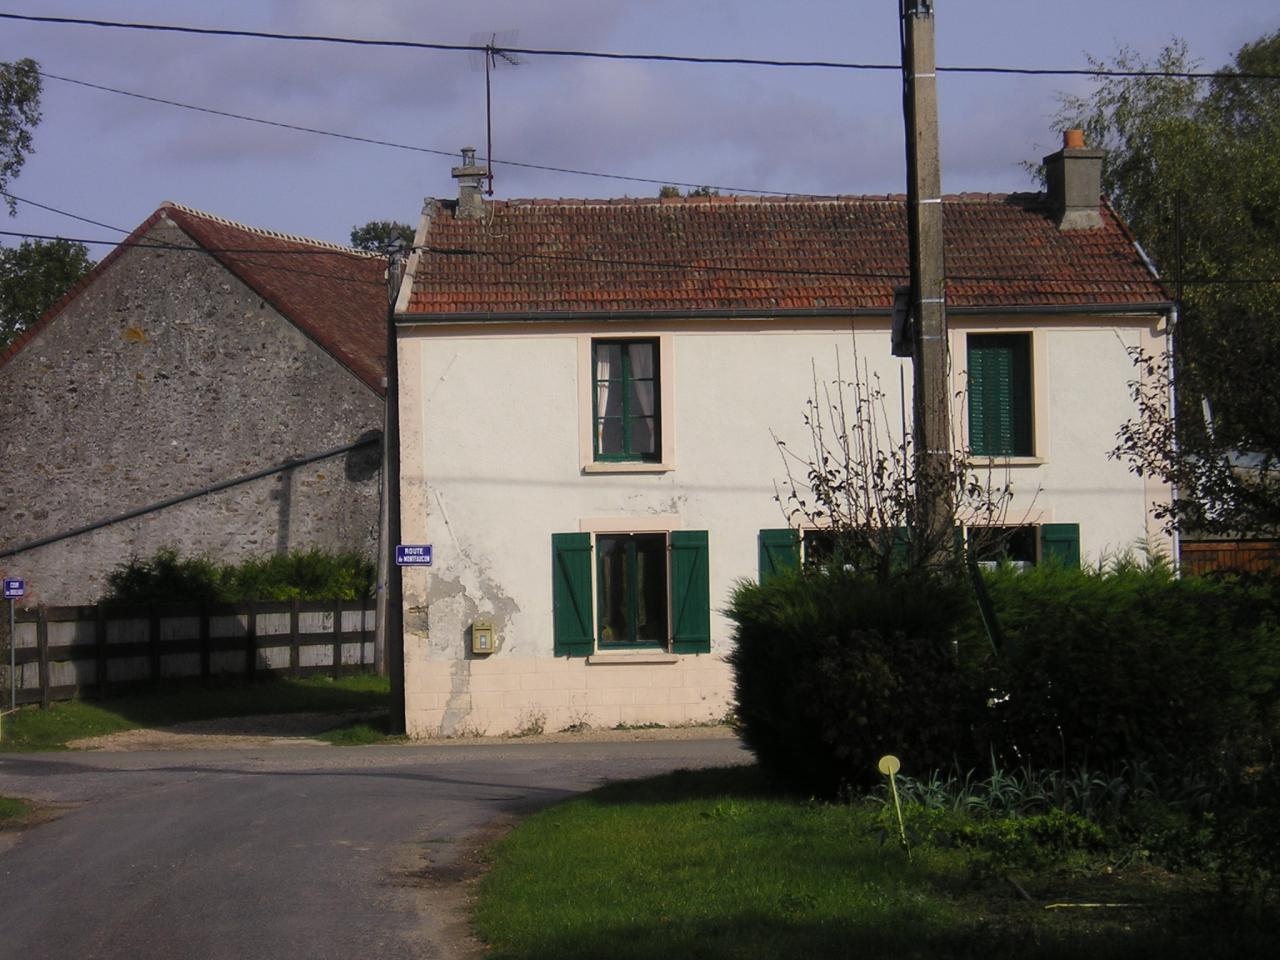 Vieils-Maisons (Aisne) Mont-Cel-Enger la maison Soudan en 2004